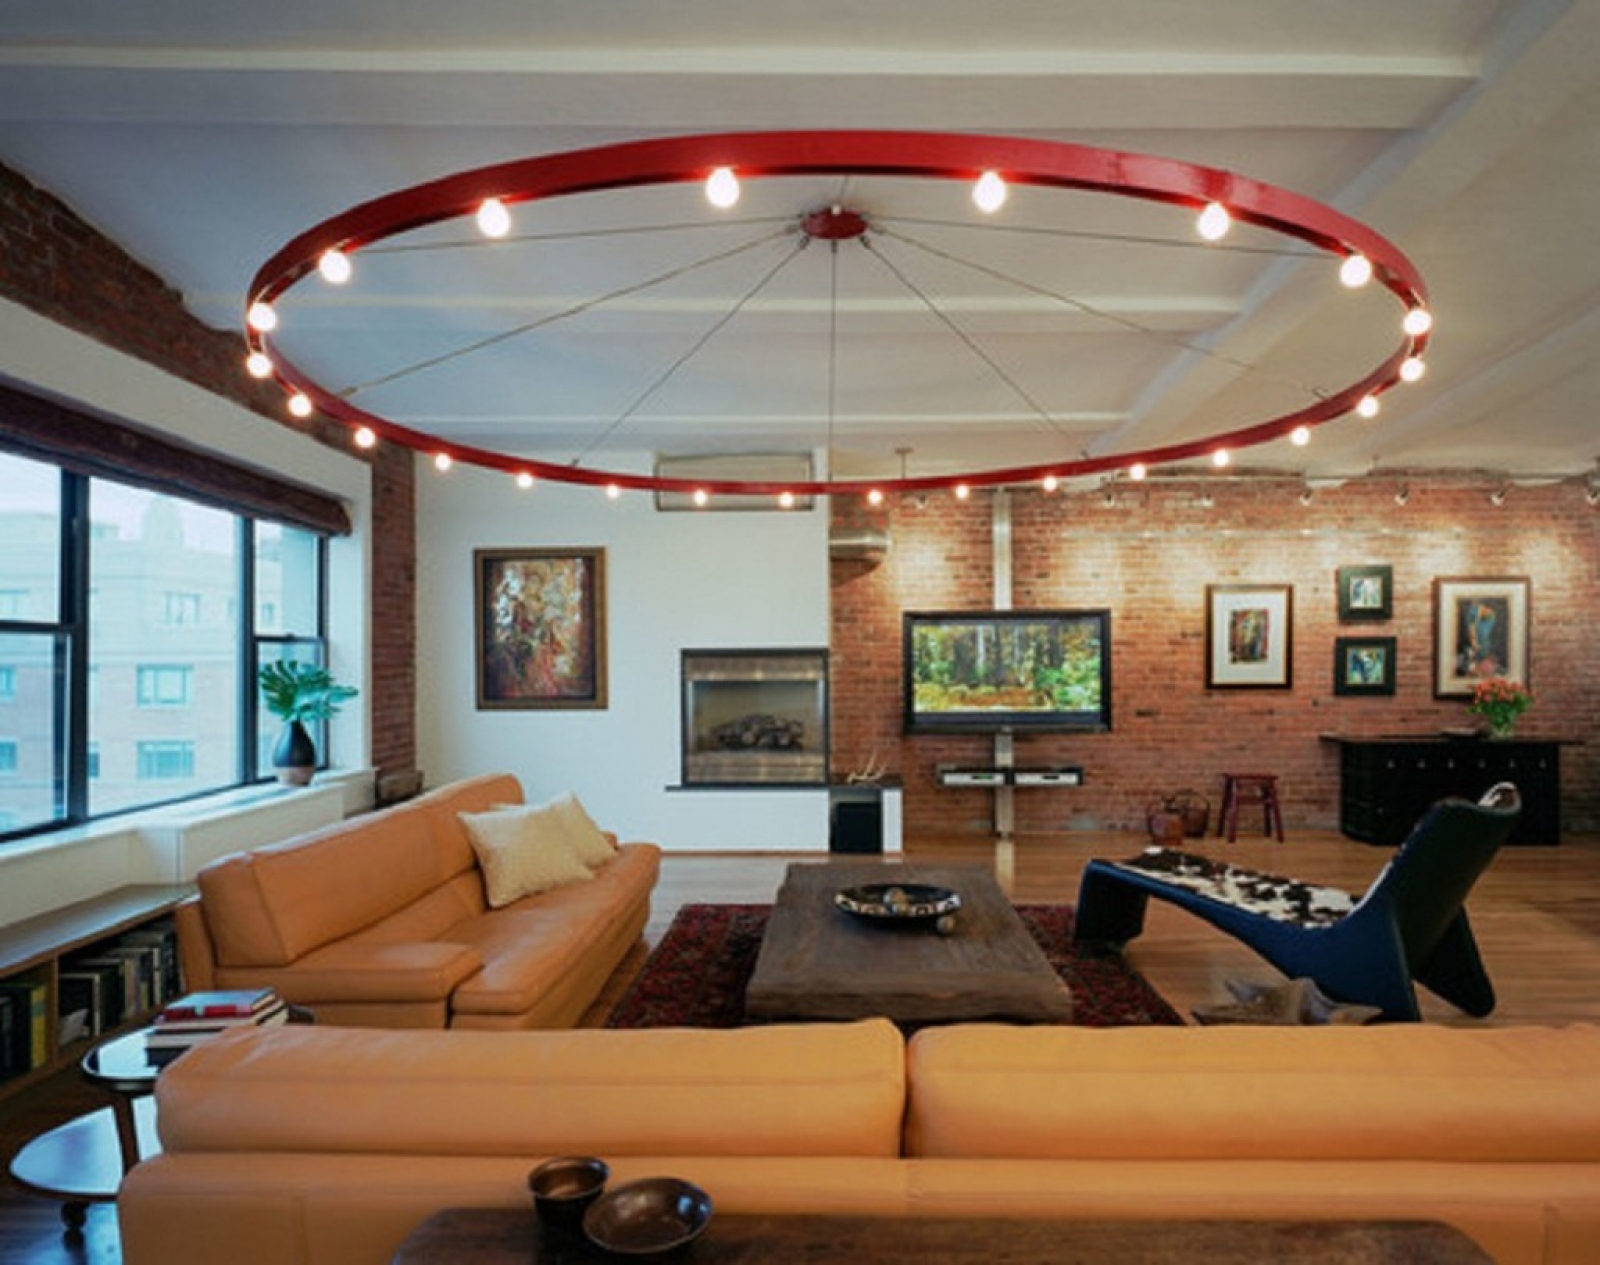 Свет лампа люстра. Дизайнерские потолки. Люстры для больших помещений. Необычный дизайн интерьера. Светильники в интерьере гостиной.